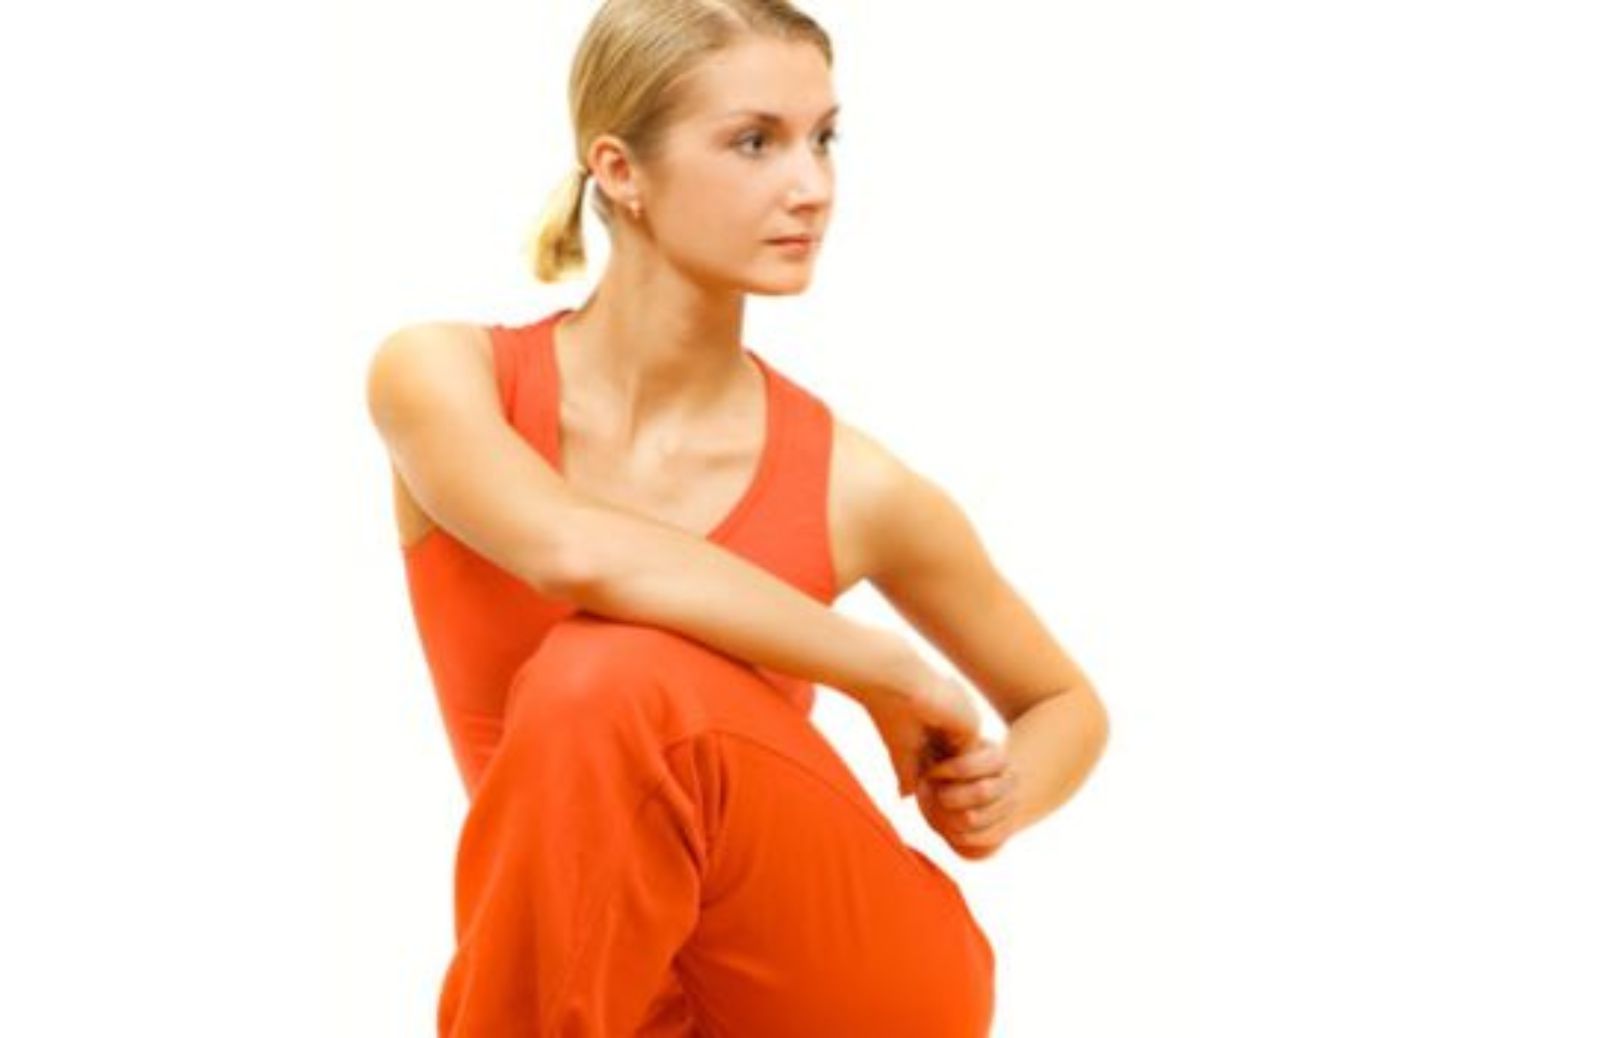 Come allenarsi con gli elastici per migliorare il tono muscolare - braccia e spalle